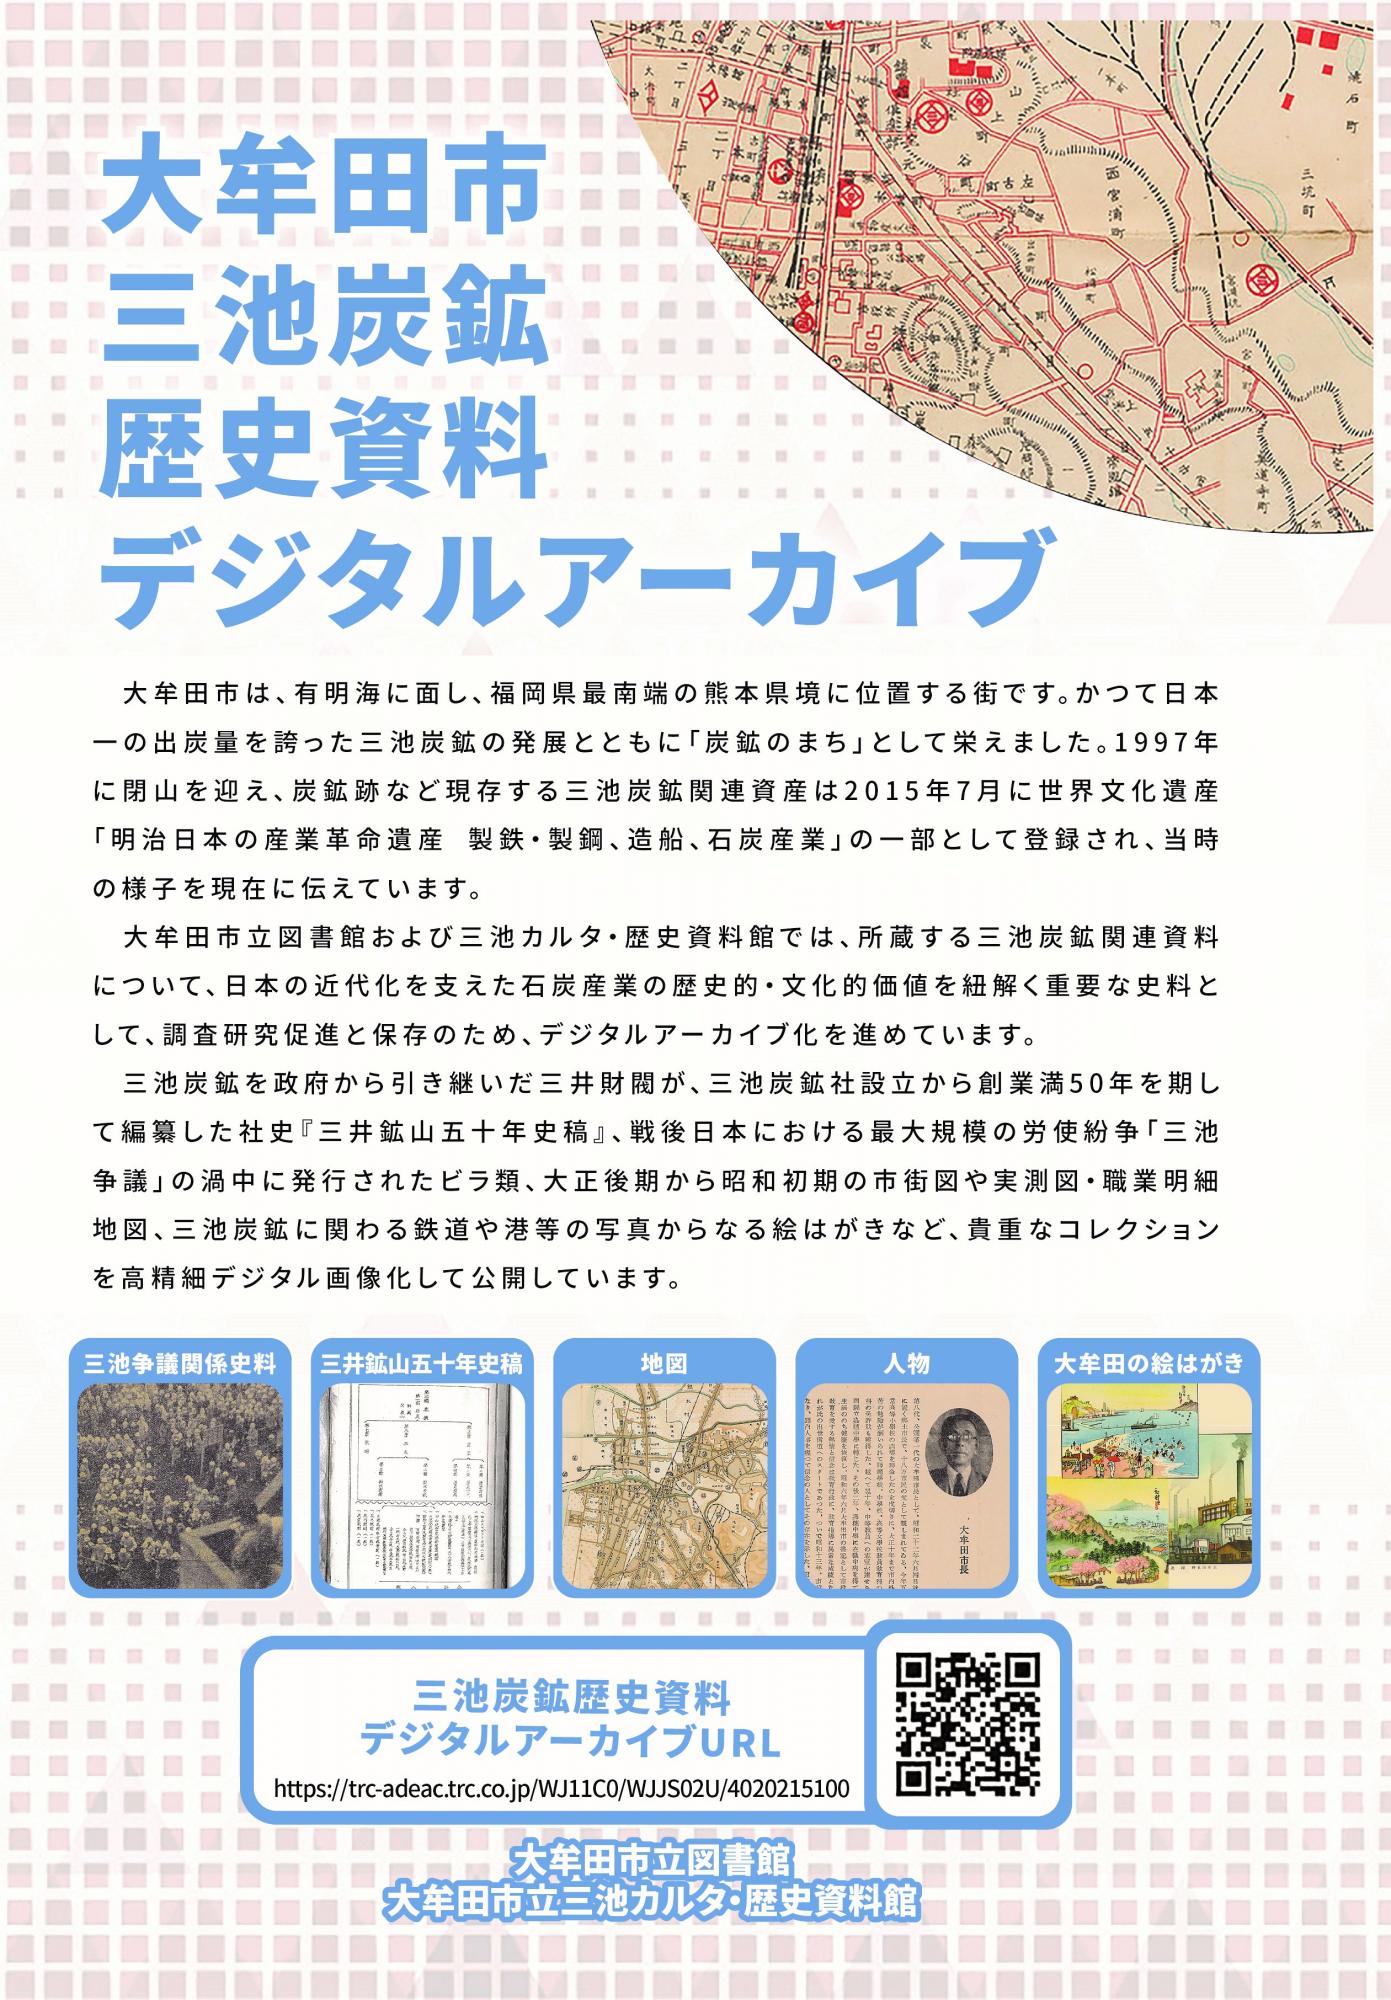 大牟田市立図書館 「三池炭鉱歴史資料デジタルアーカイブ